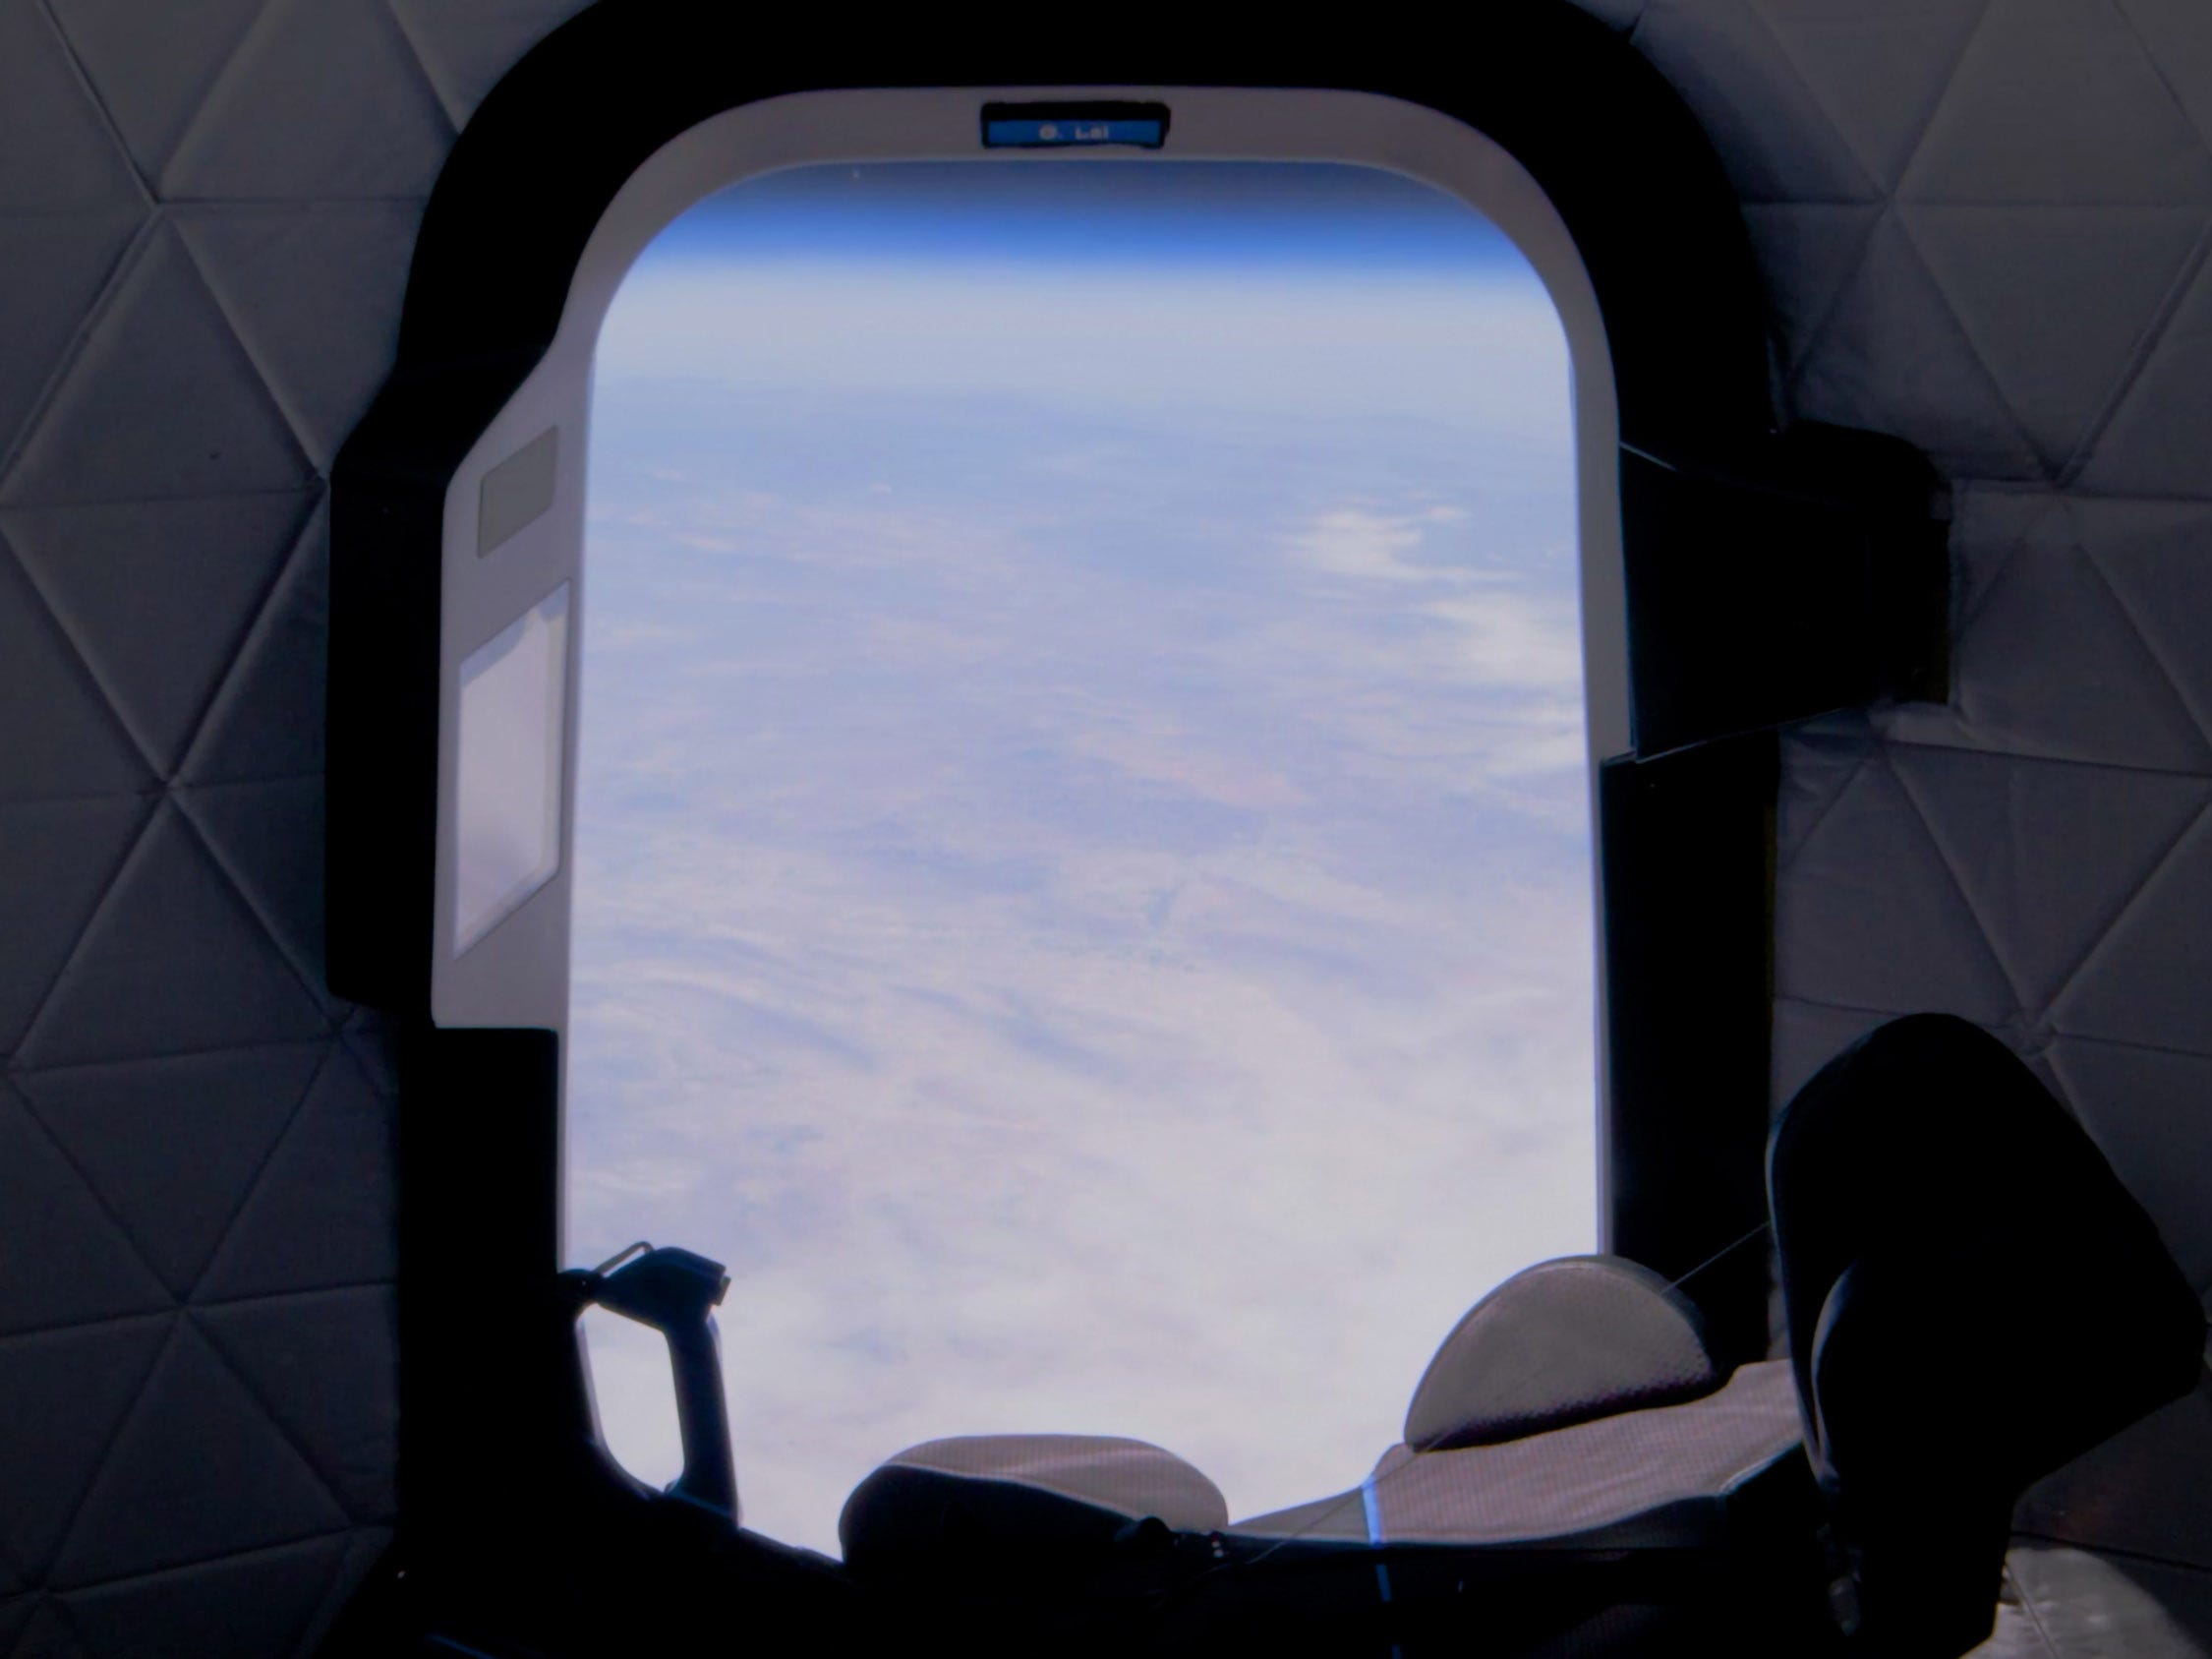 blue origin new shepard crew capsule view from spaceship window in space